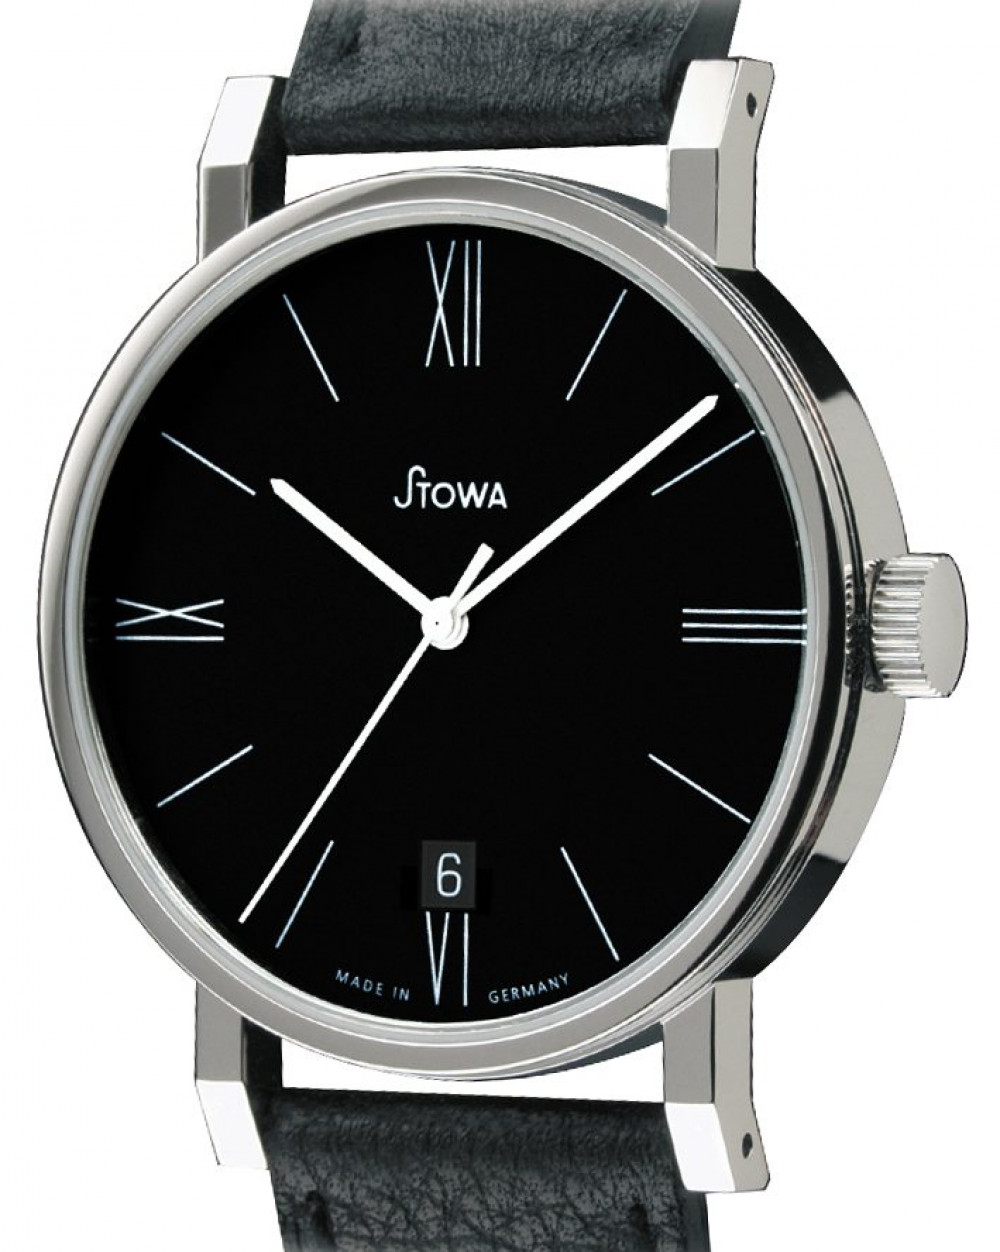 Zegarek firmy Stowa, model Antea automatik schwarz Römer Datum